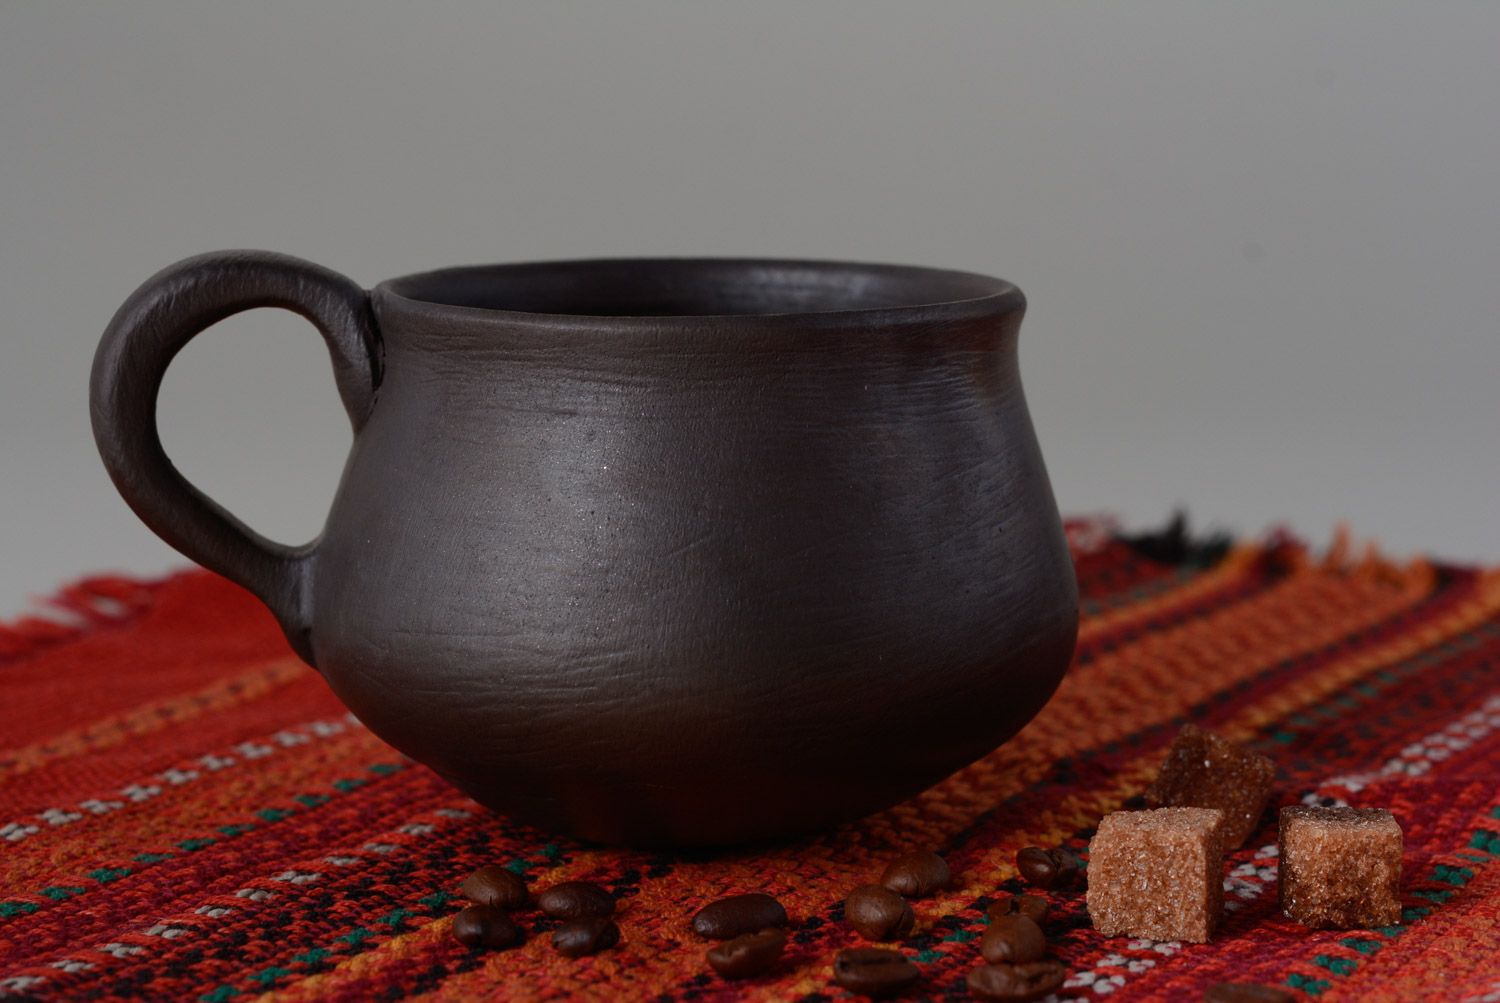 Handmade Tasse aus Ton 300 ml schwarz geräucherte Keramik umweltfreundlich foto 1